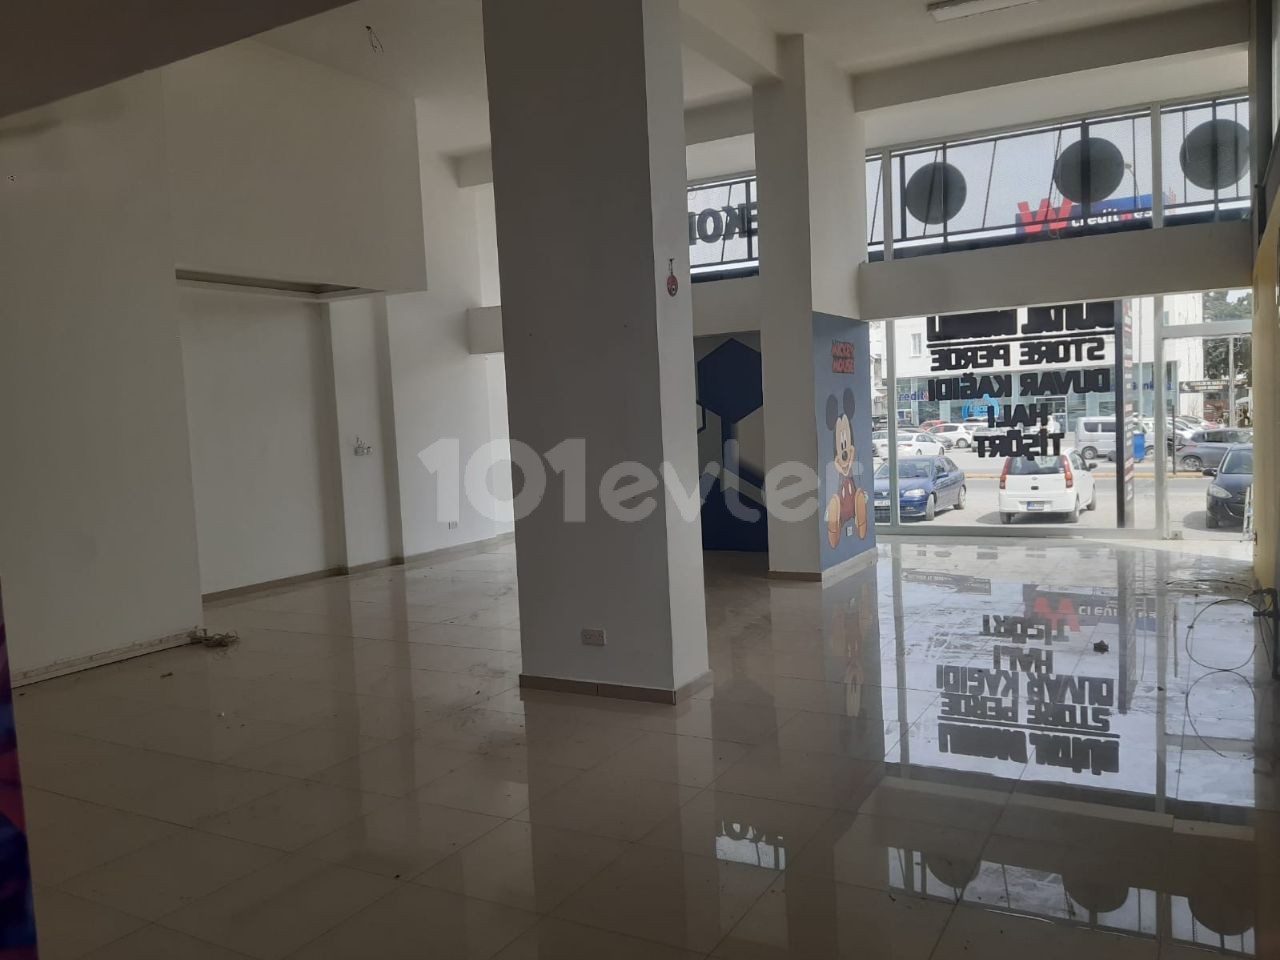 An der Hauptstraße neben dem Famagusta Deniz Plaza gibt es ein 230 m2 großes Geschäft zu vermieten.